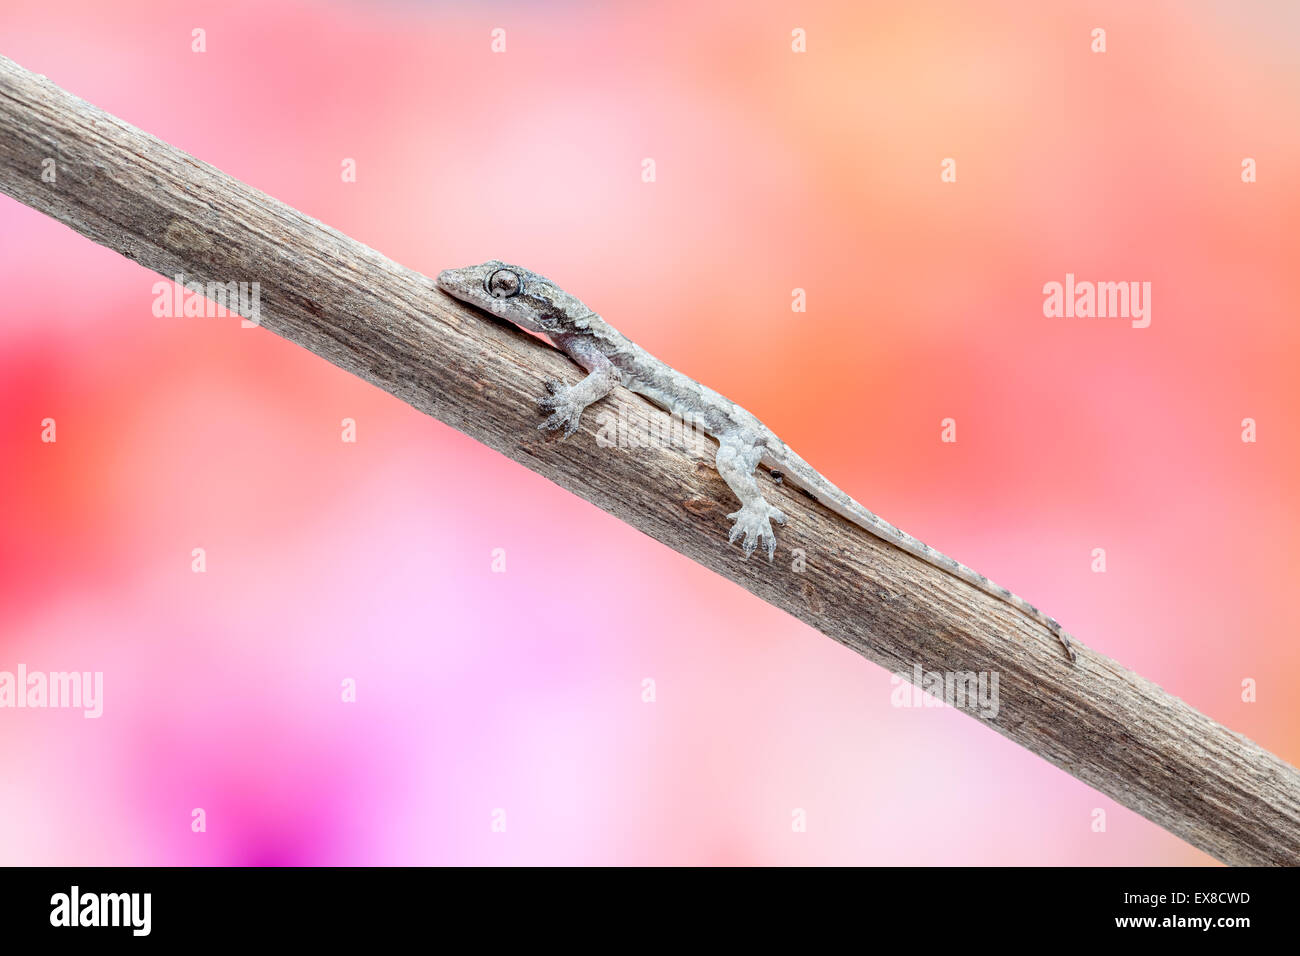 En estrechar la rama de un árbol es una lagartija Foto de stock